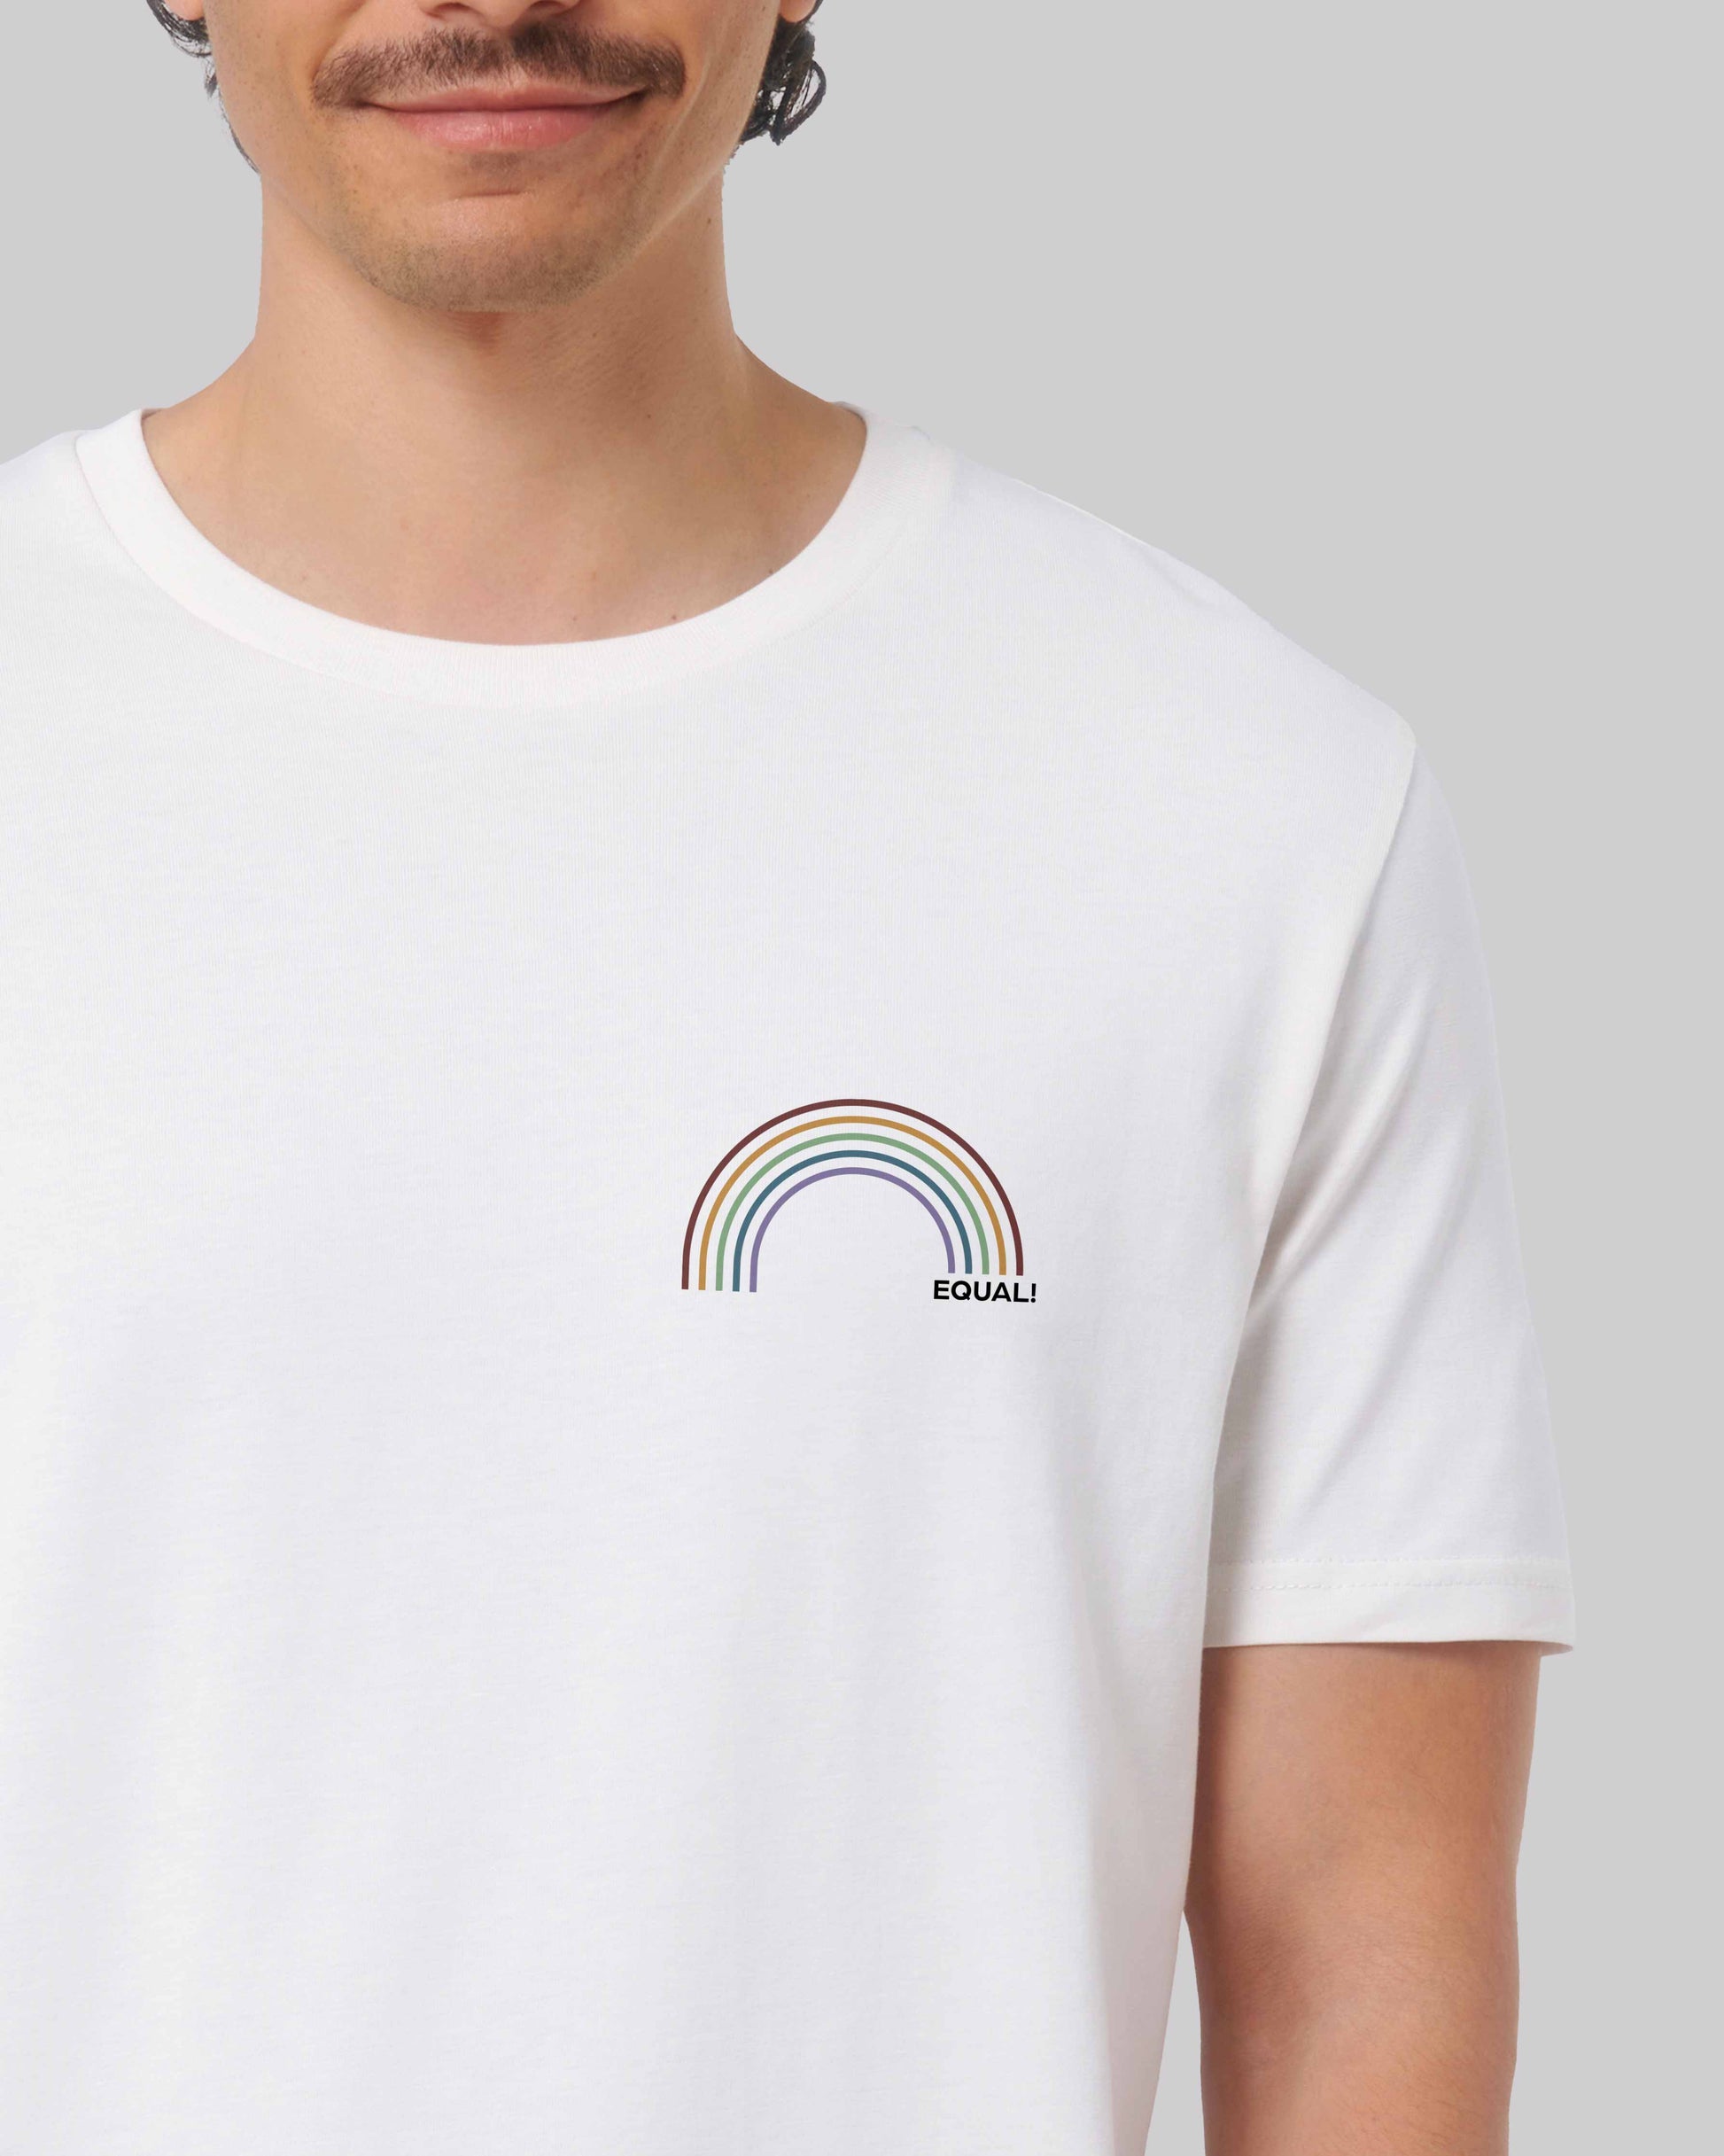 EINHORST® unisex Organic Shirt in weiß mit dem Motiv "equal-Regenbogen" in der Kombination bunter Regenbogen mit schwarzer Schrift, Bild von männlicher Person mit Shirt